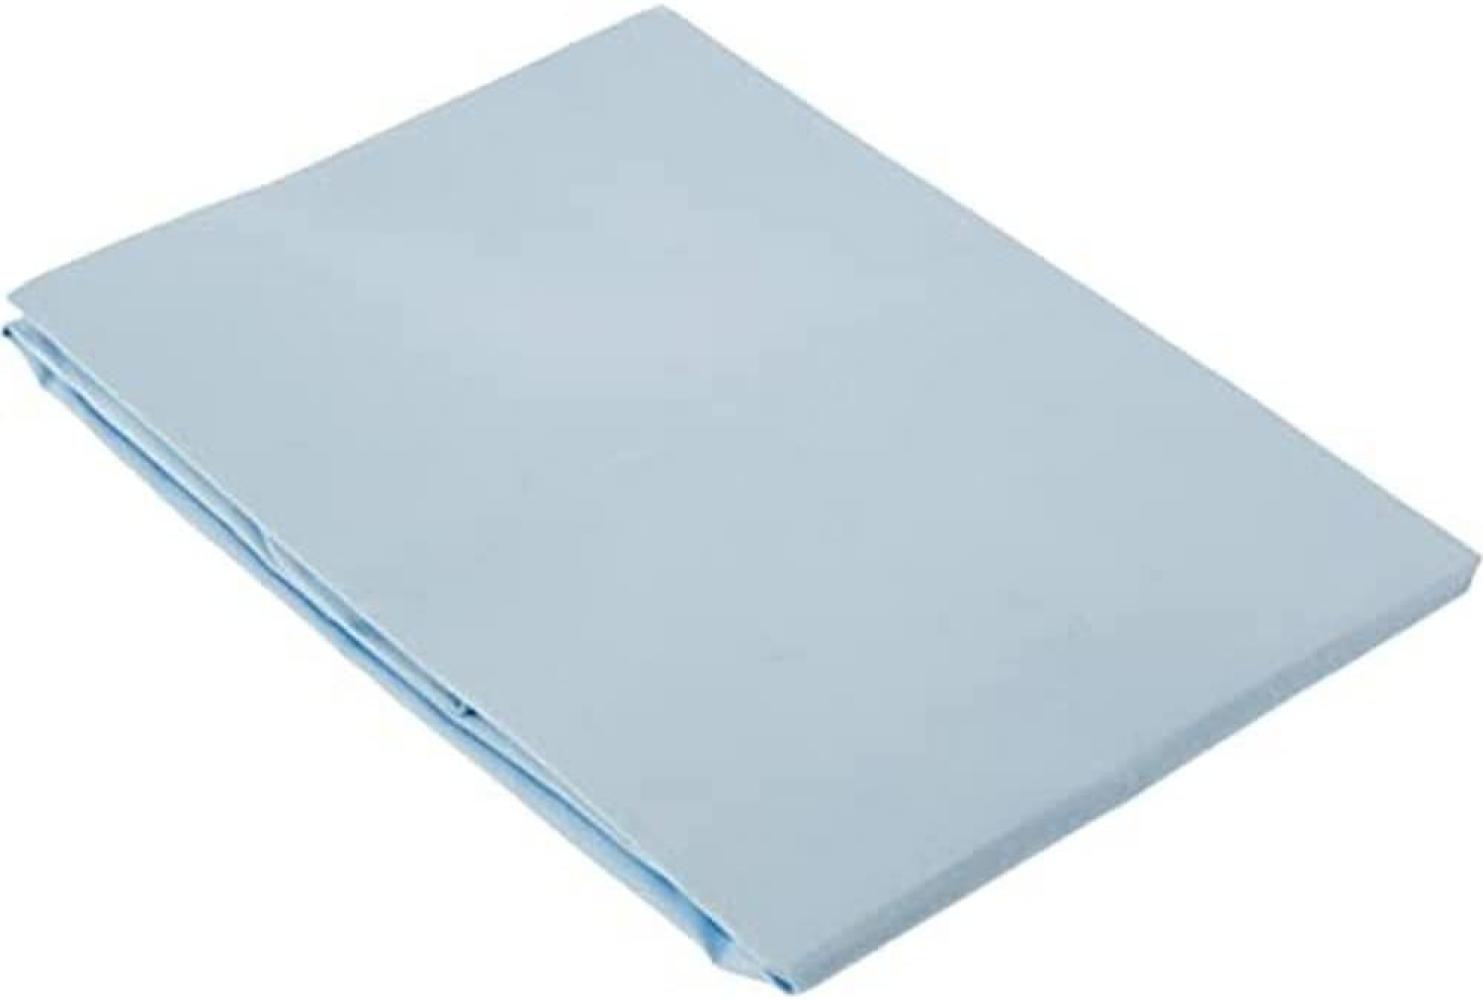 pirulos 40300003 – Spannbettlaken, Baumwolle, 60 x 120 cm, blau Bild 1